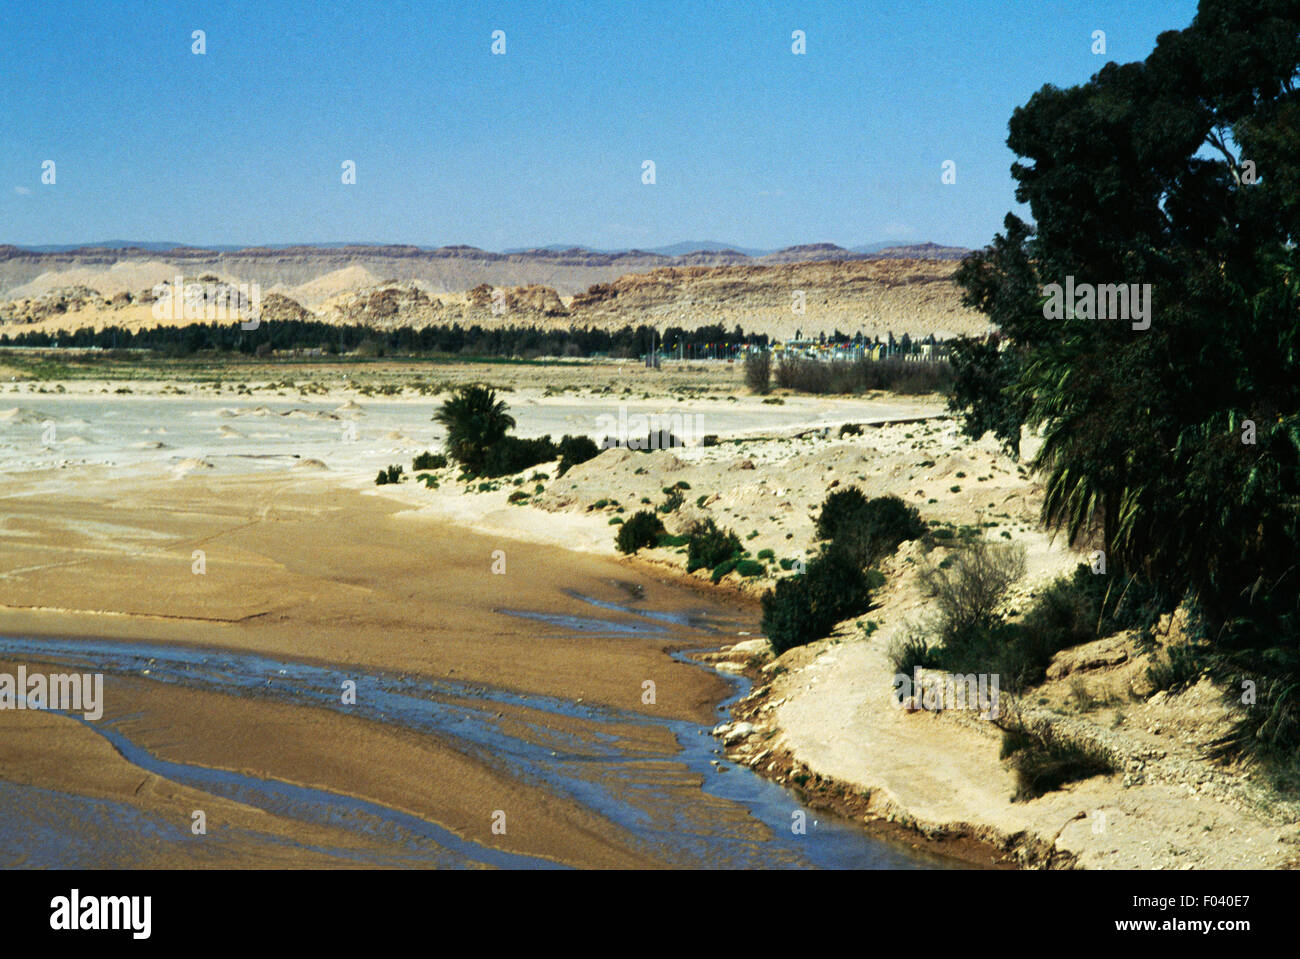 Il Djedi il letto del fiume nei pressi di Laghouat, Algeria. Foto Stock